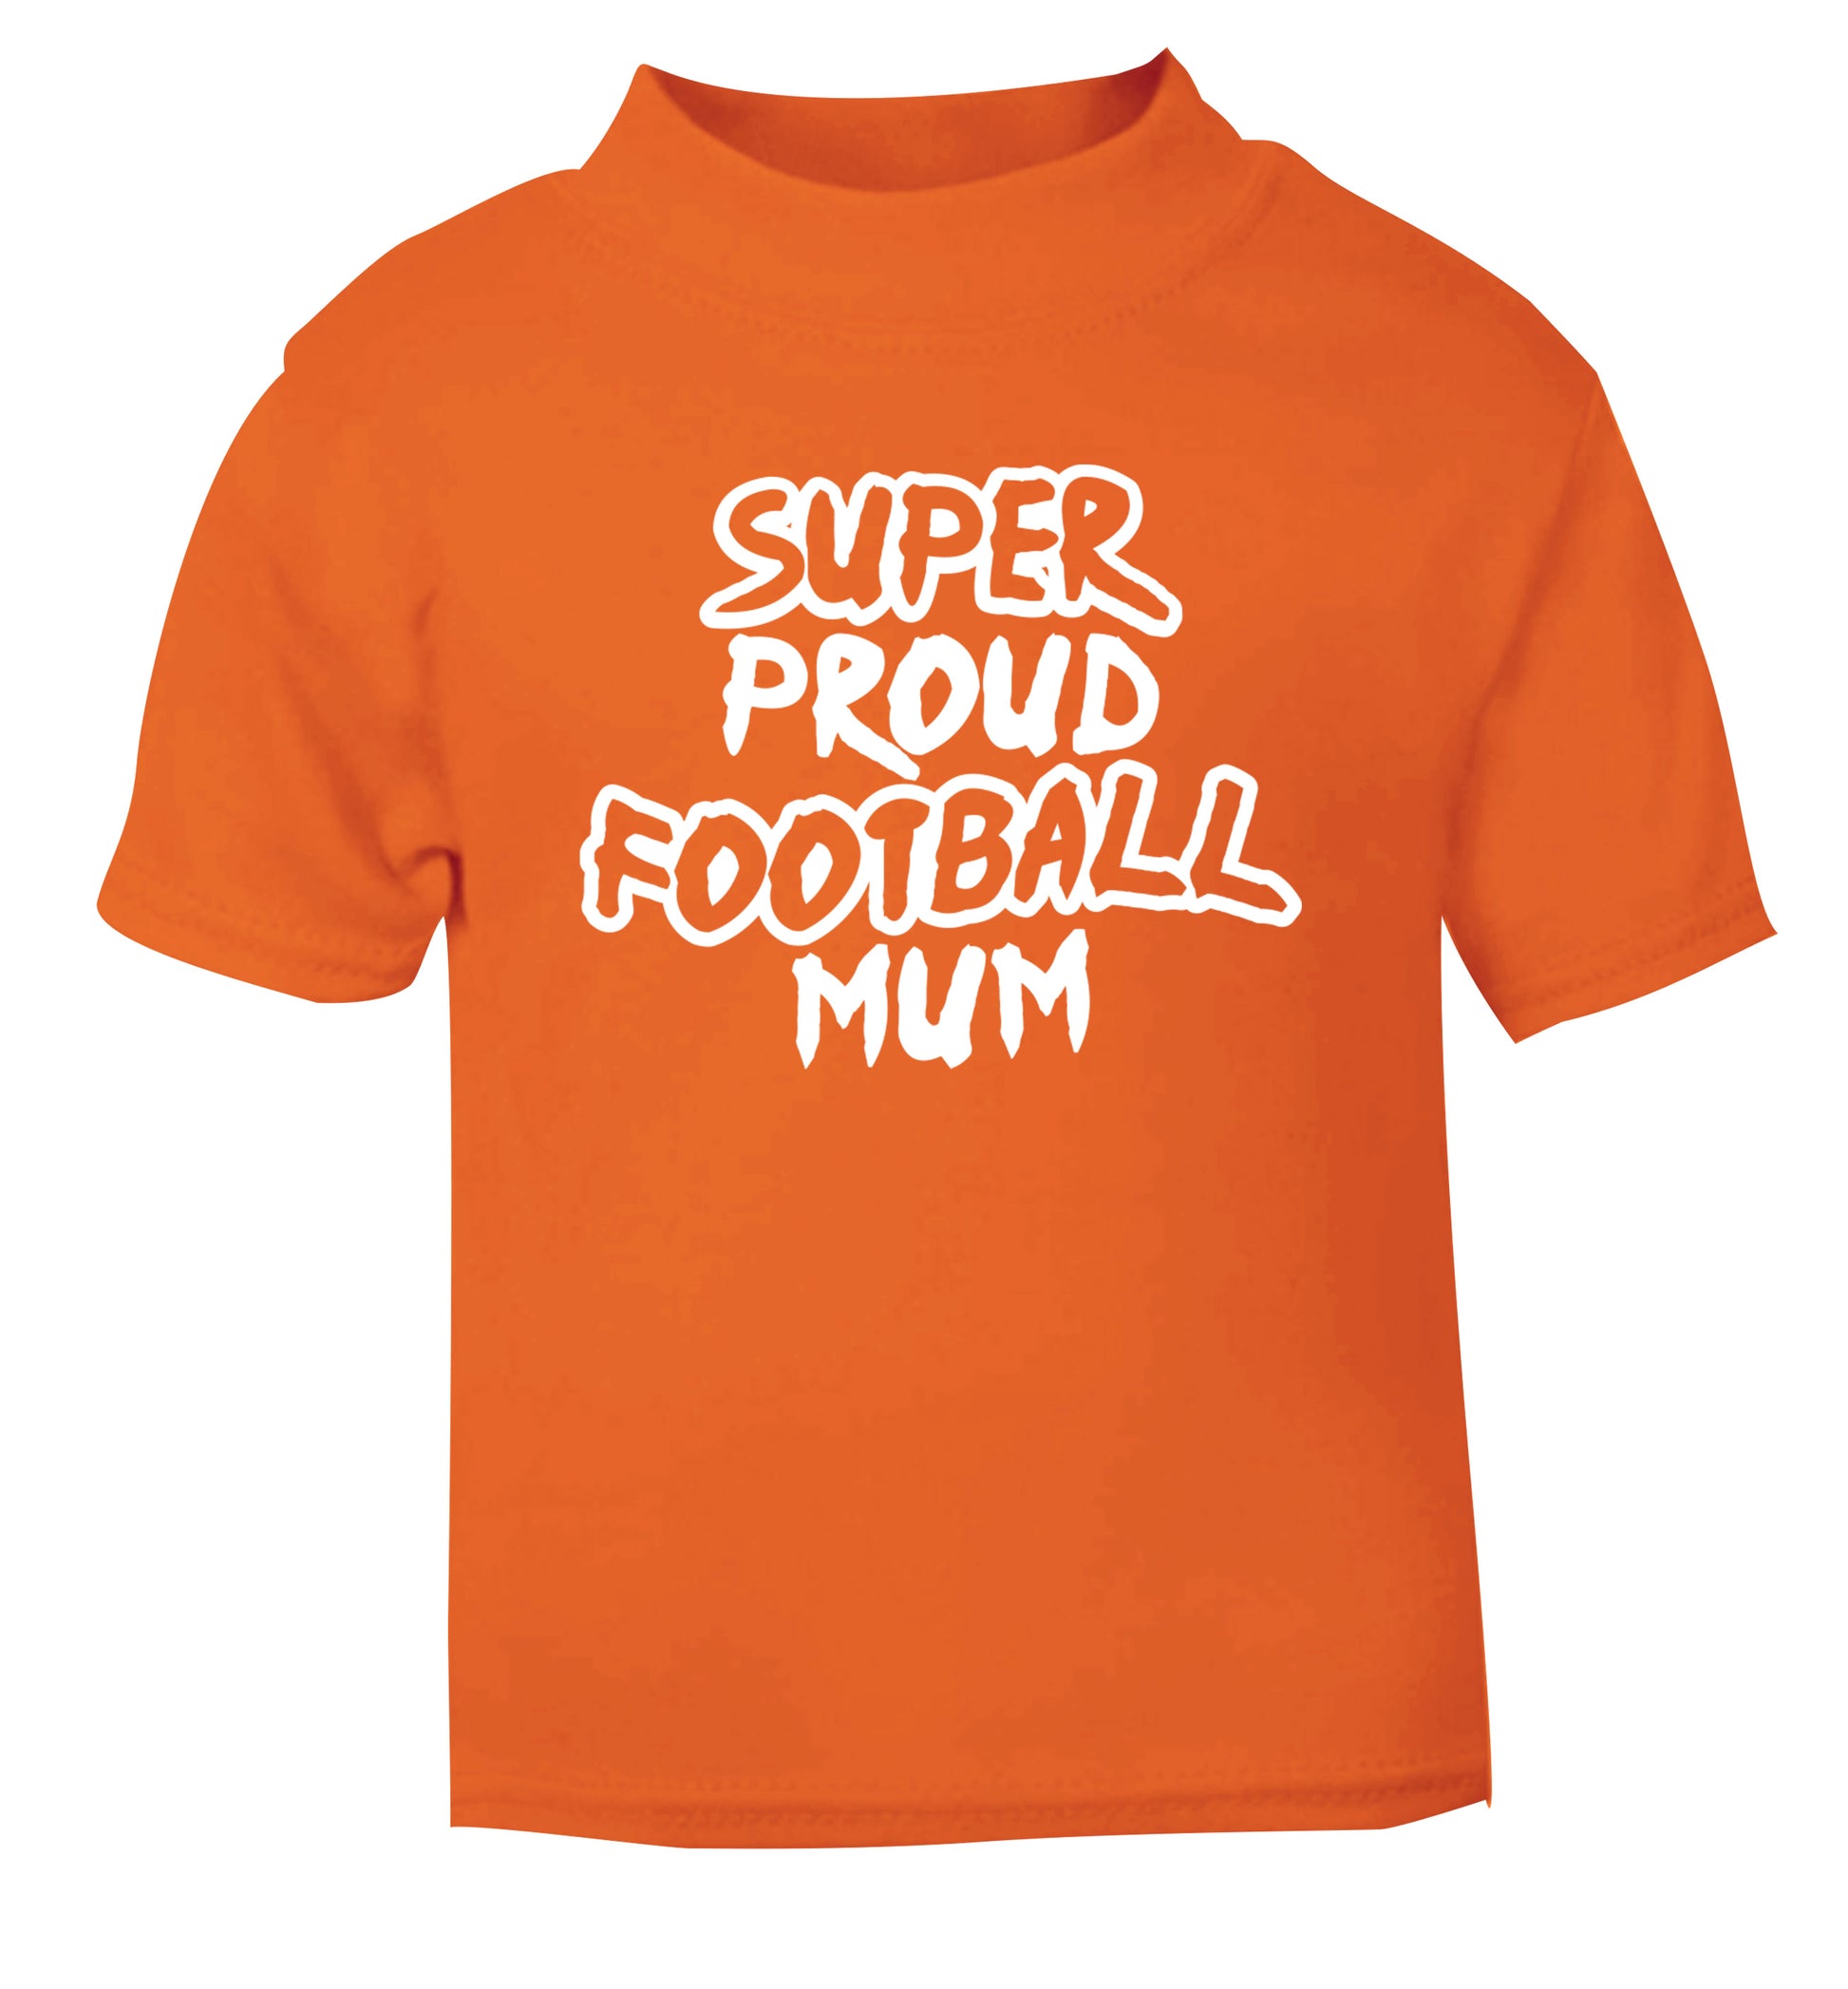 Super proud football mum orange Baby Toddler Tshirt 2 Years